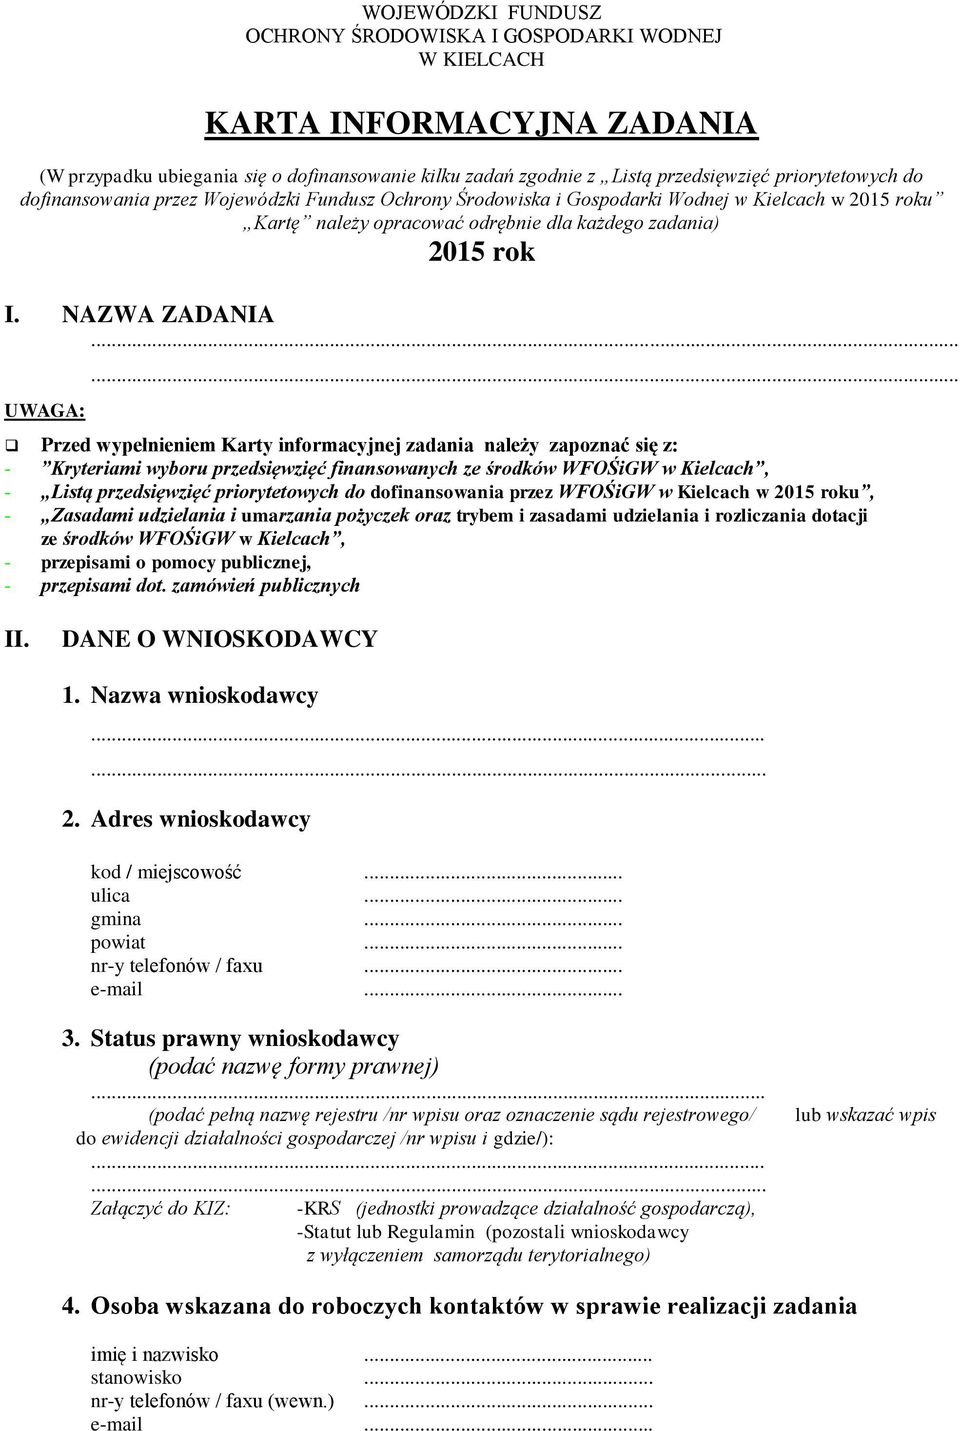 .. Przed wypełnieniem Karty informacyjnej zadania należy zapoznać się z: - Kryteriami wyboru przedsięwzięć finansowanych ze środków WFOŚiGW w Kielcach, - Listą przedsięwzięć priorytetowych do